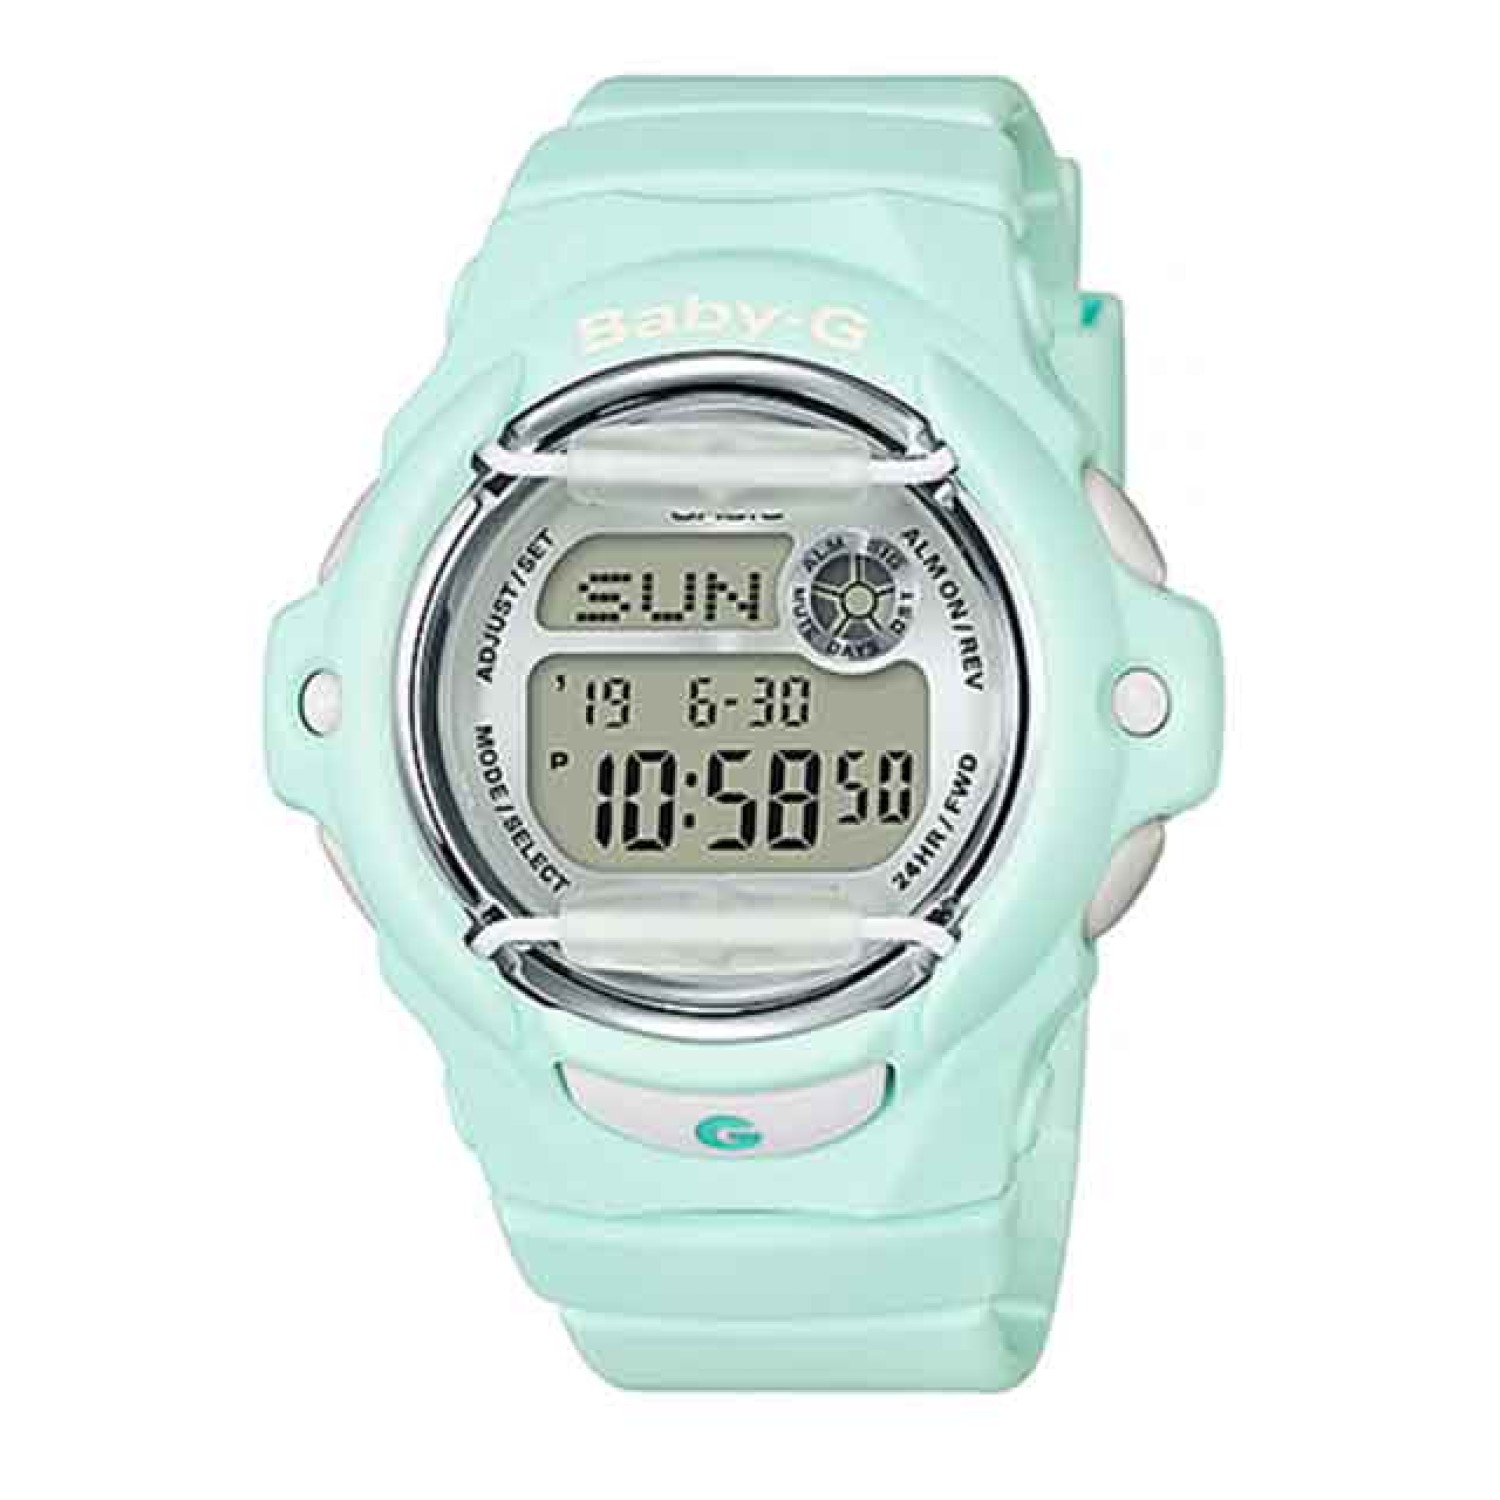 BG169R-3 Casio BabY-G Mint Databank Watch.casio watches nz sale $199.00